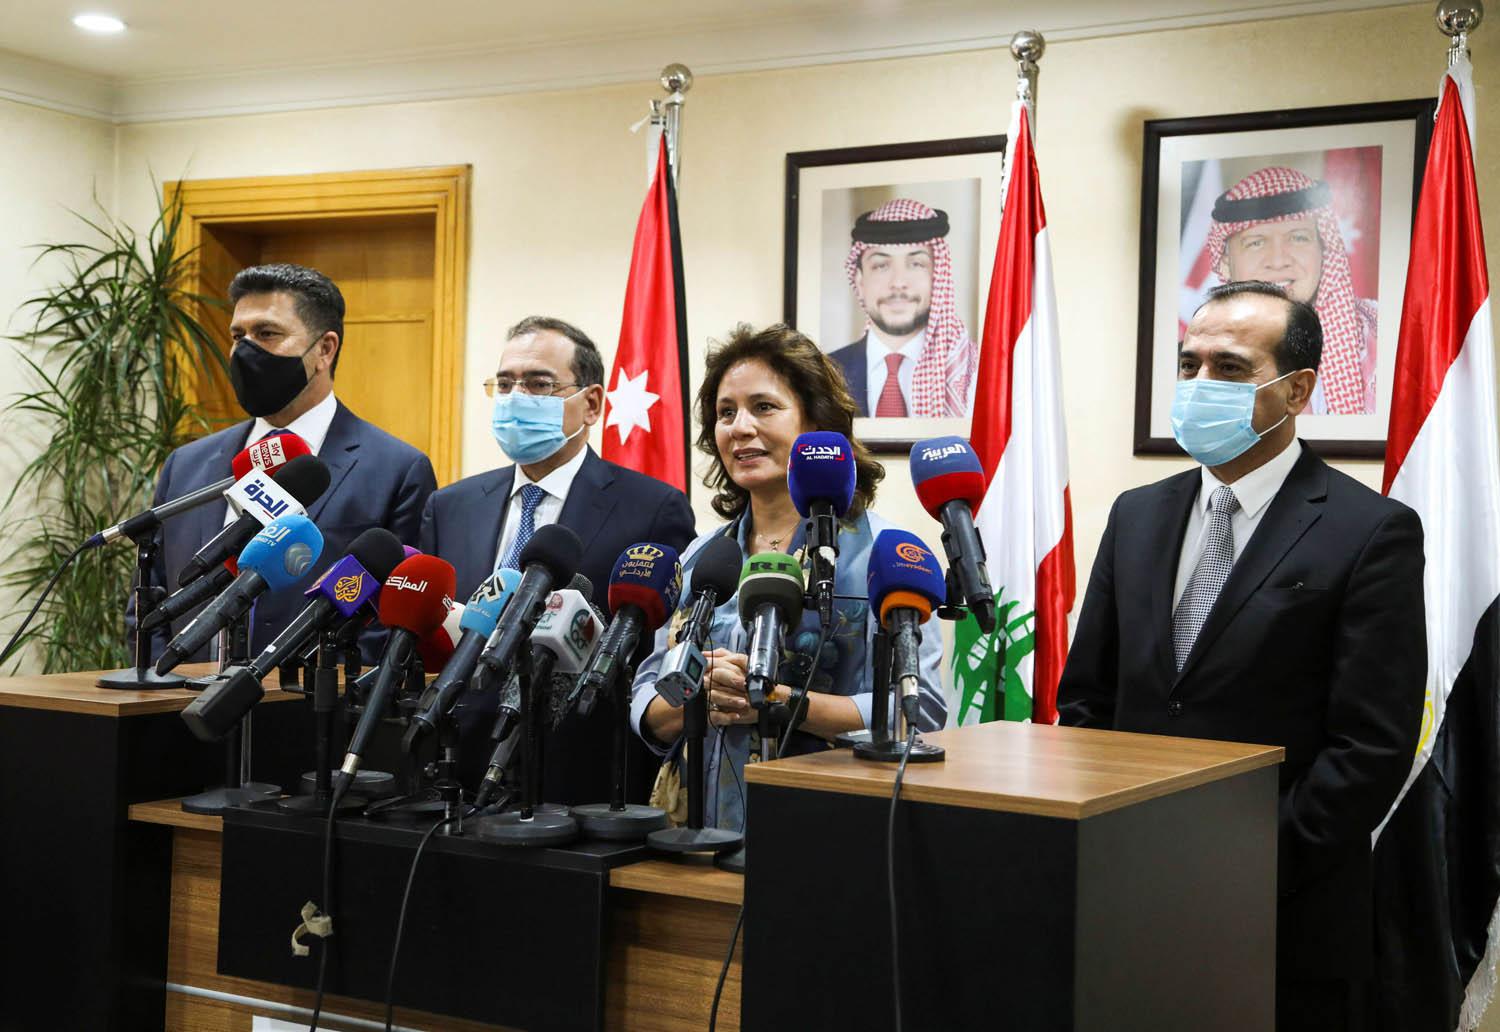 وزراء الطاقة في سوريا والاردن ومصر لبنان في اجتماع في عمان